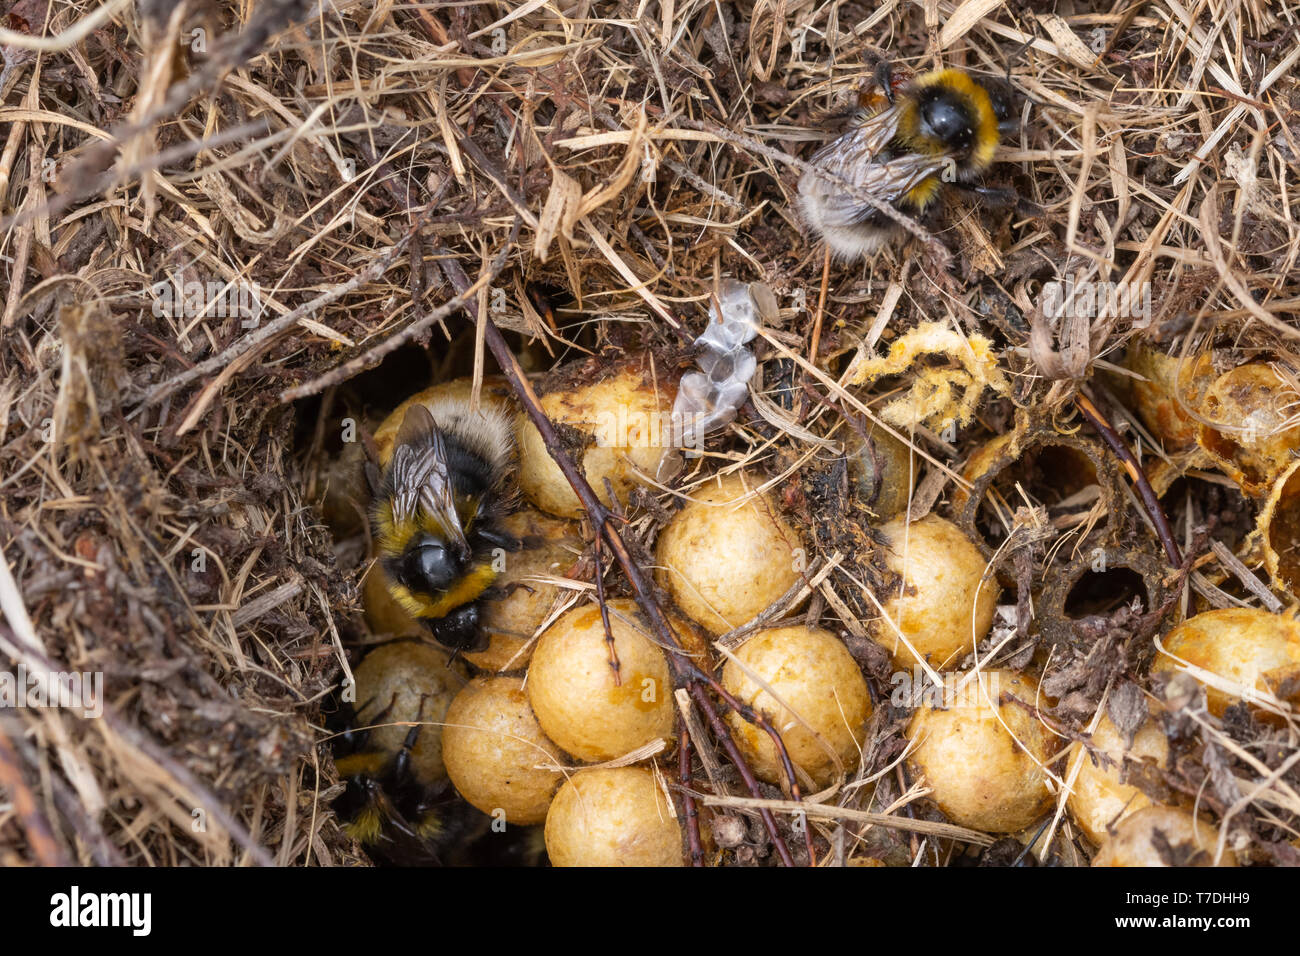 Petit jardin bumblebee nid (Bombus hortorum) avec sabot, Honeycomb, cellules visibles parmi les feuilles mortes, Surrey, UK Banque D'Images